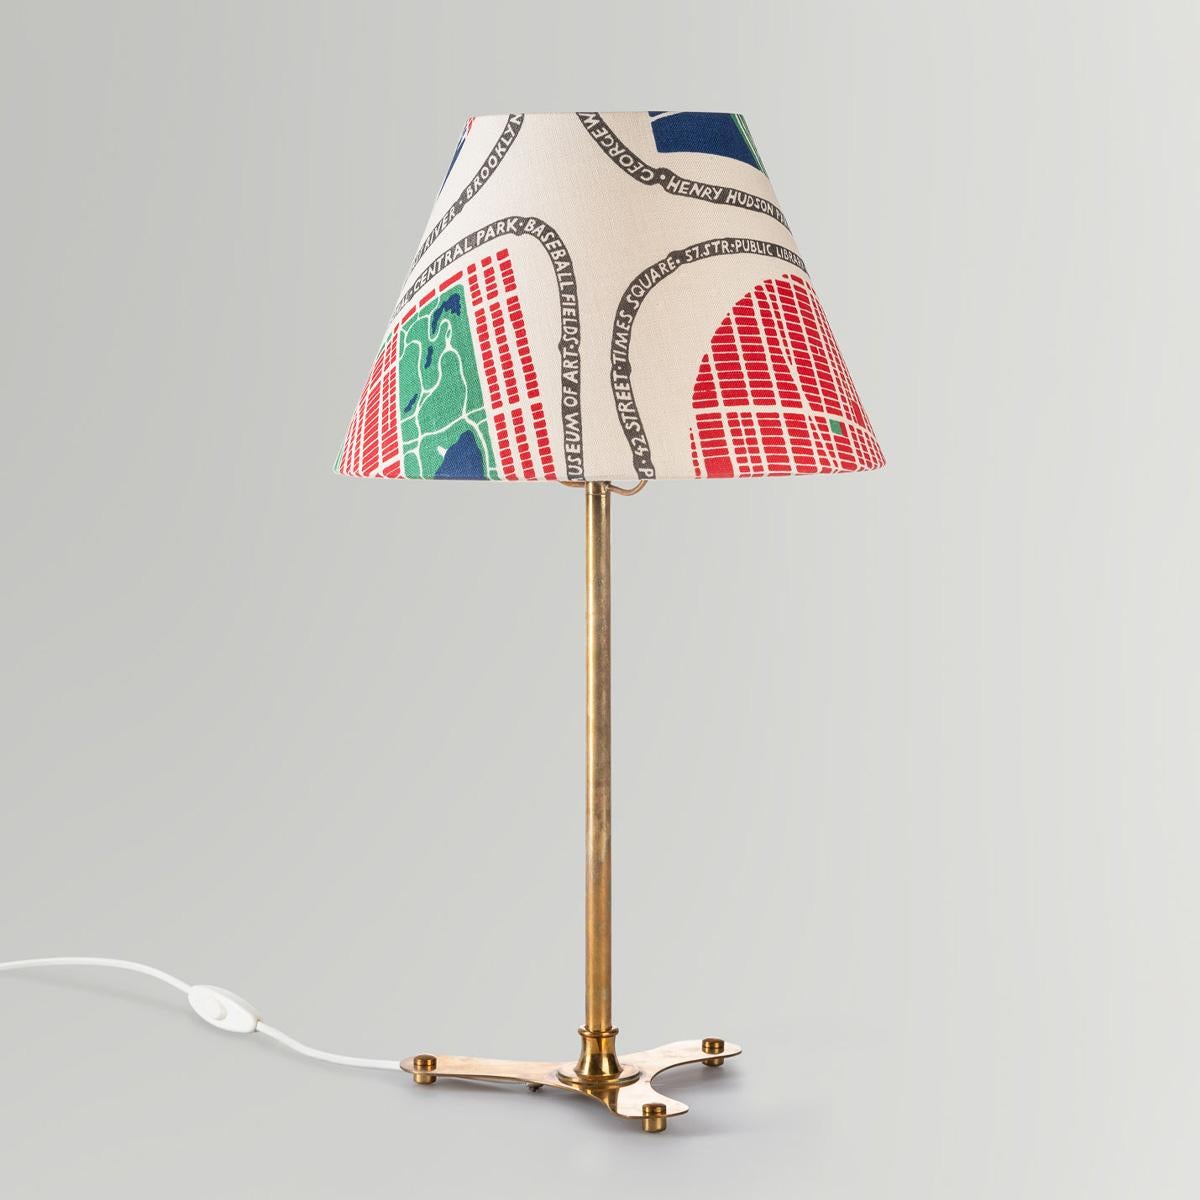 Lampe de table en laiton, modèle 2467, conçue par Josef Frank pour Svenskt Tenn en Suède, années 1950.

Cette élégante et rare lampe de table suédoise a été conçue dans les années 1950 par le célèbre architecte et designer d'origine autrichienne